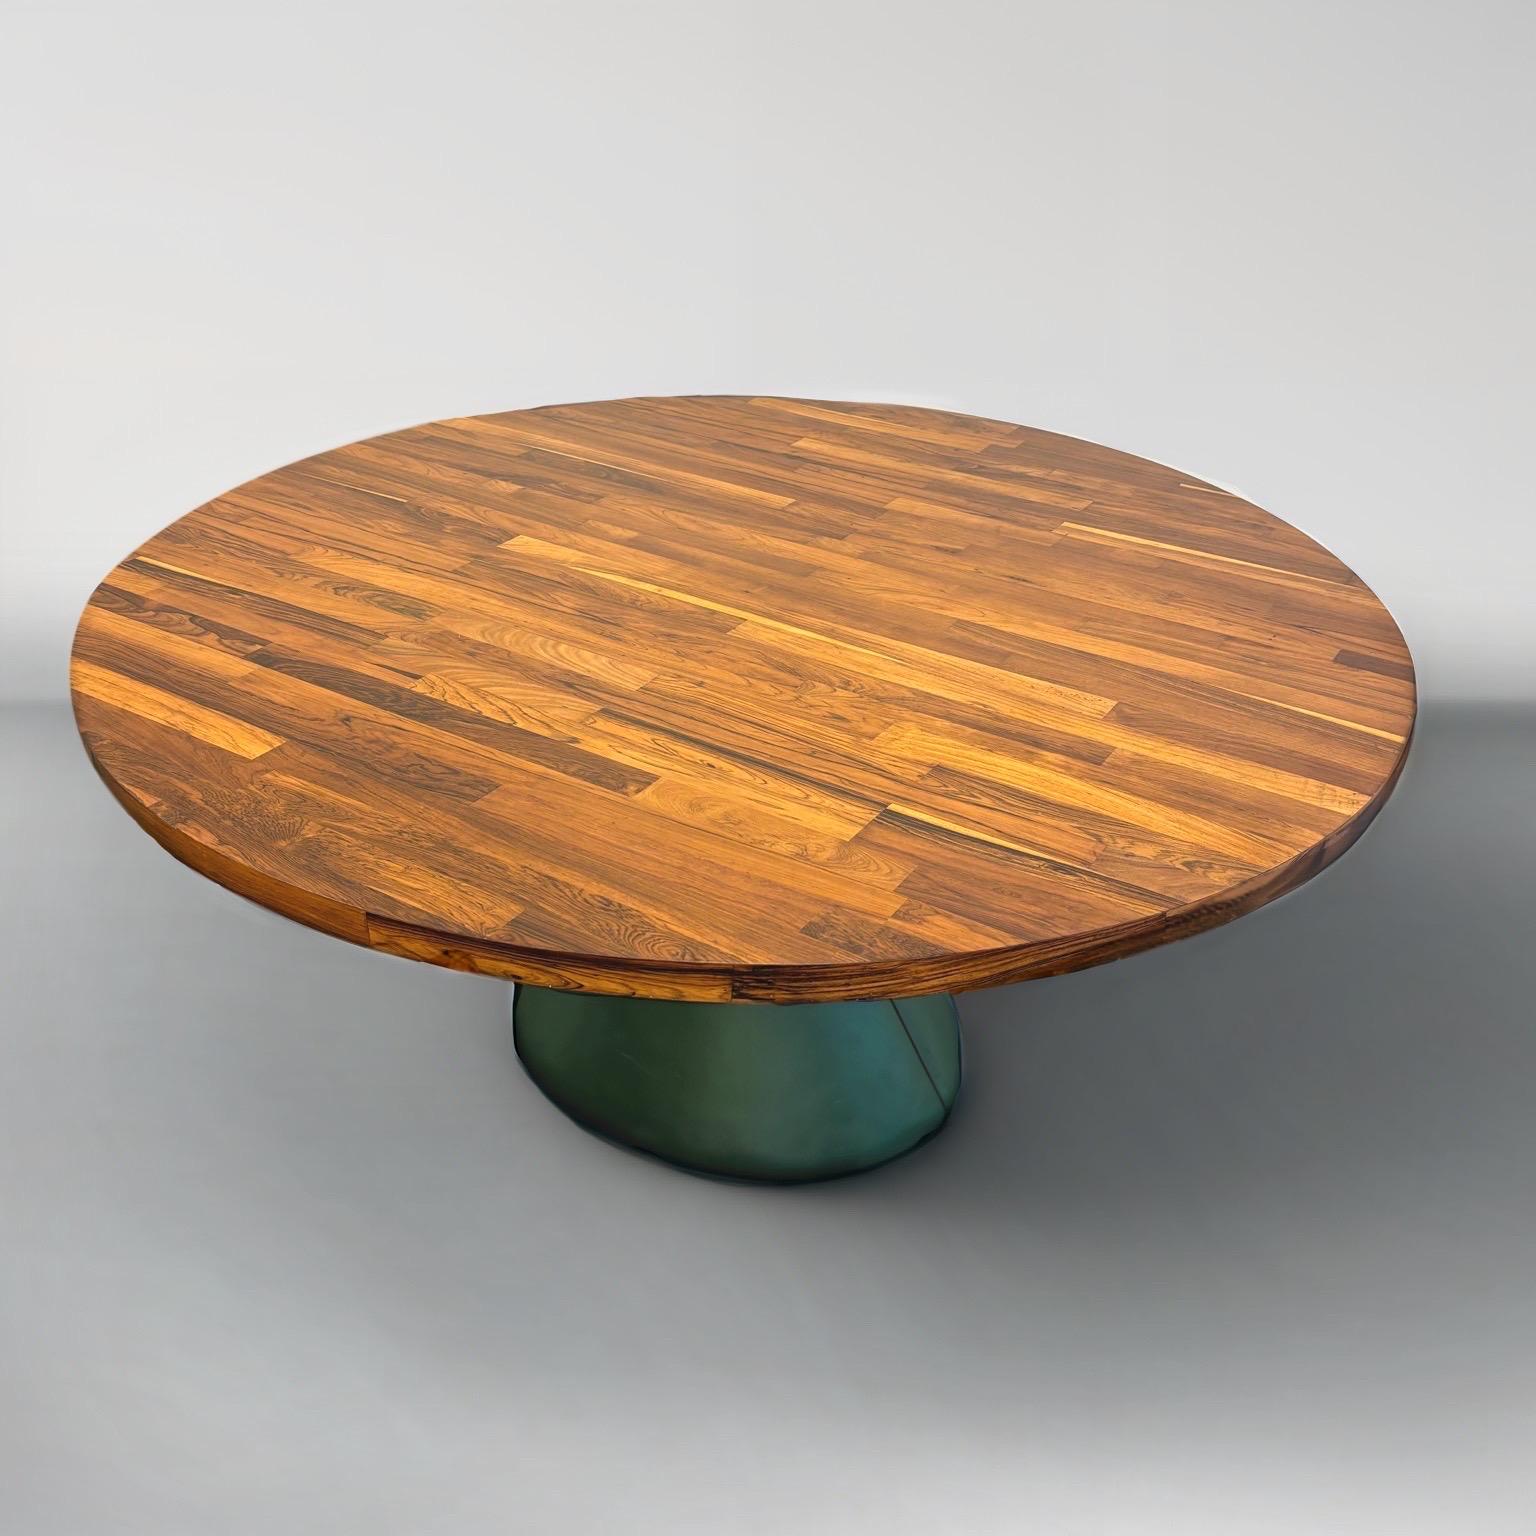 Moderner runder Esstisch aus Holz und Leder von Jorge Zalszupin, 1960er Jahre.

Diese  Guaruja-Esstisch von Jorge Zalszupin (1922 - 2020), geschätzter Designer  ist ein Zeugnis für raffinierte Eleganz. 
Der mit viel Liebe zum Detail gefertigte